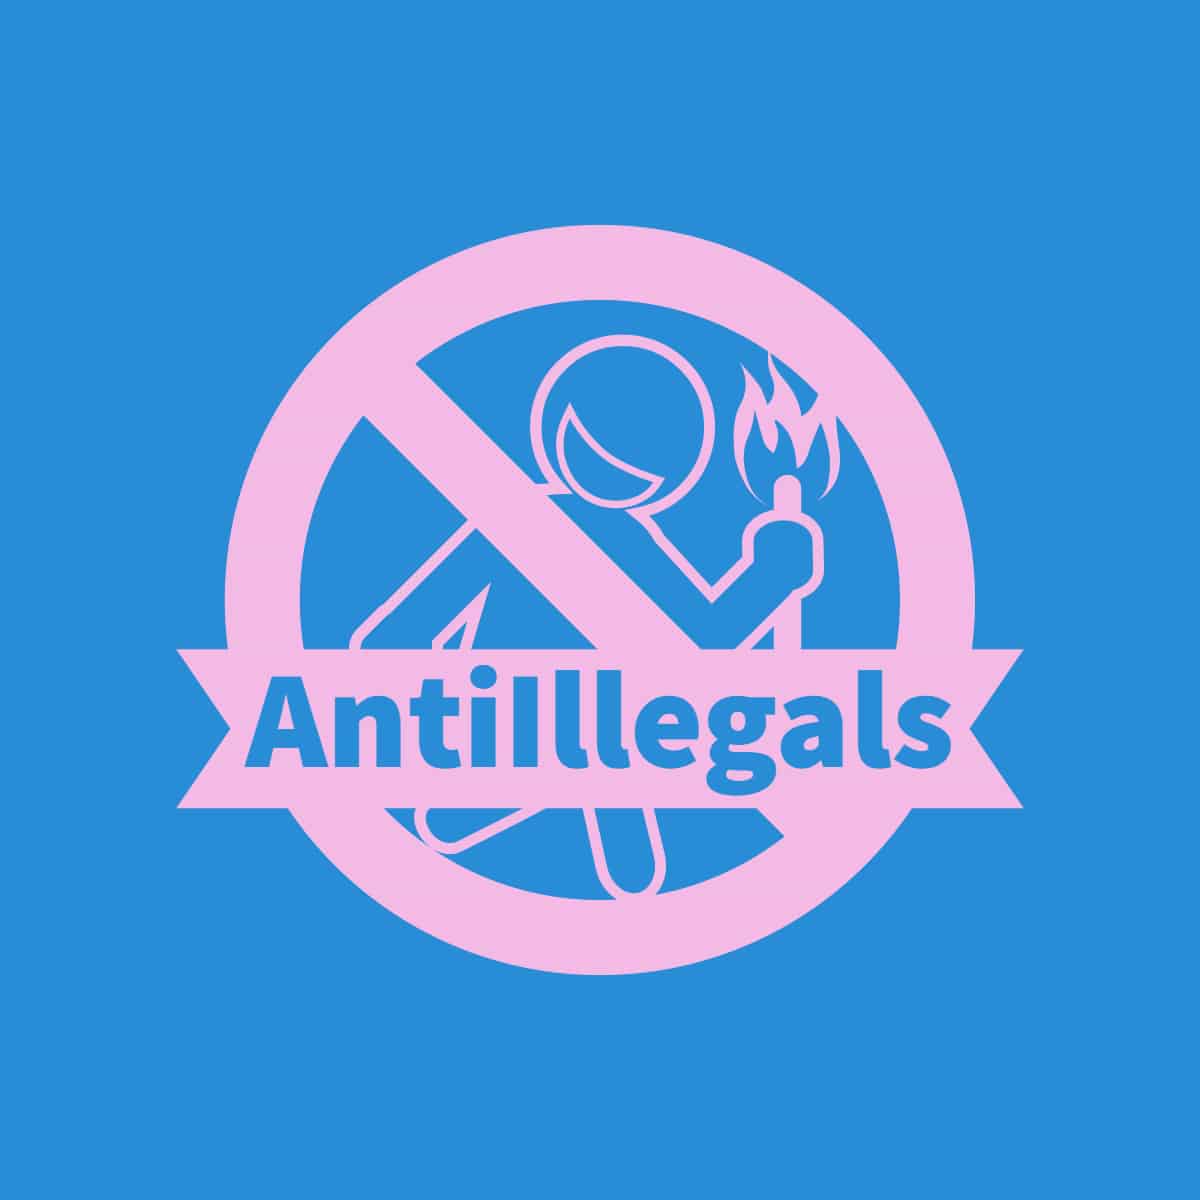 Anti Illegals